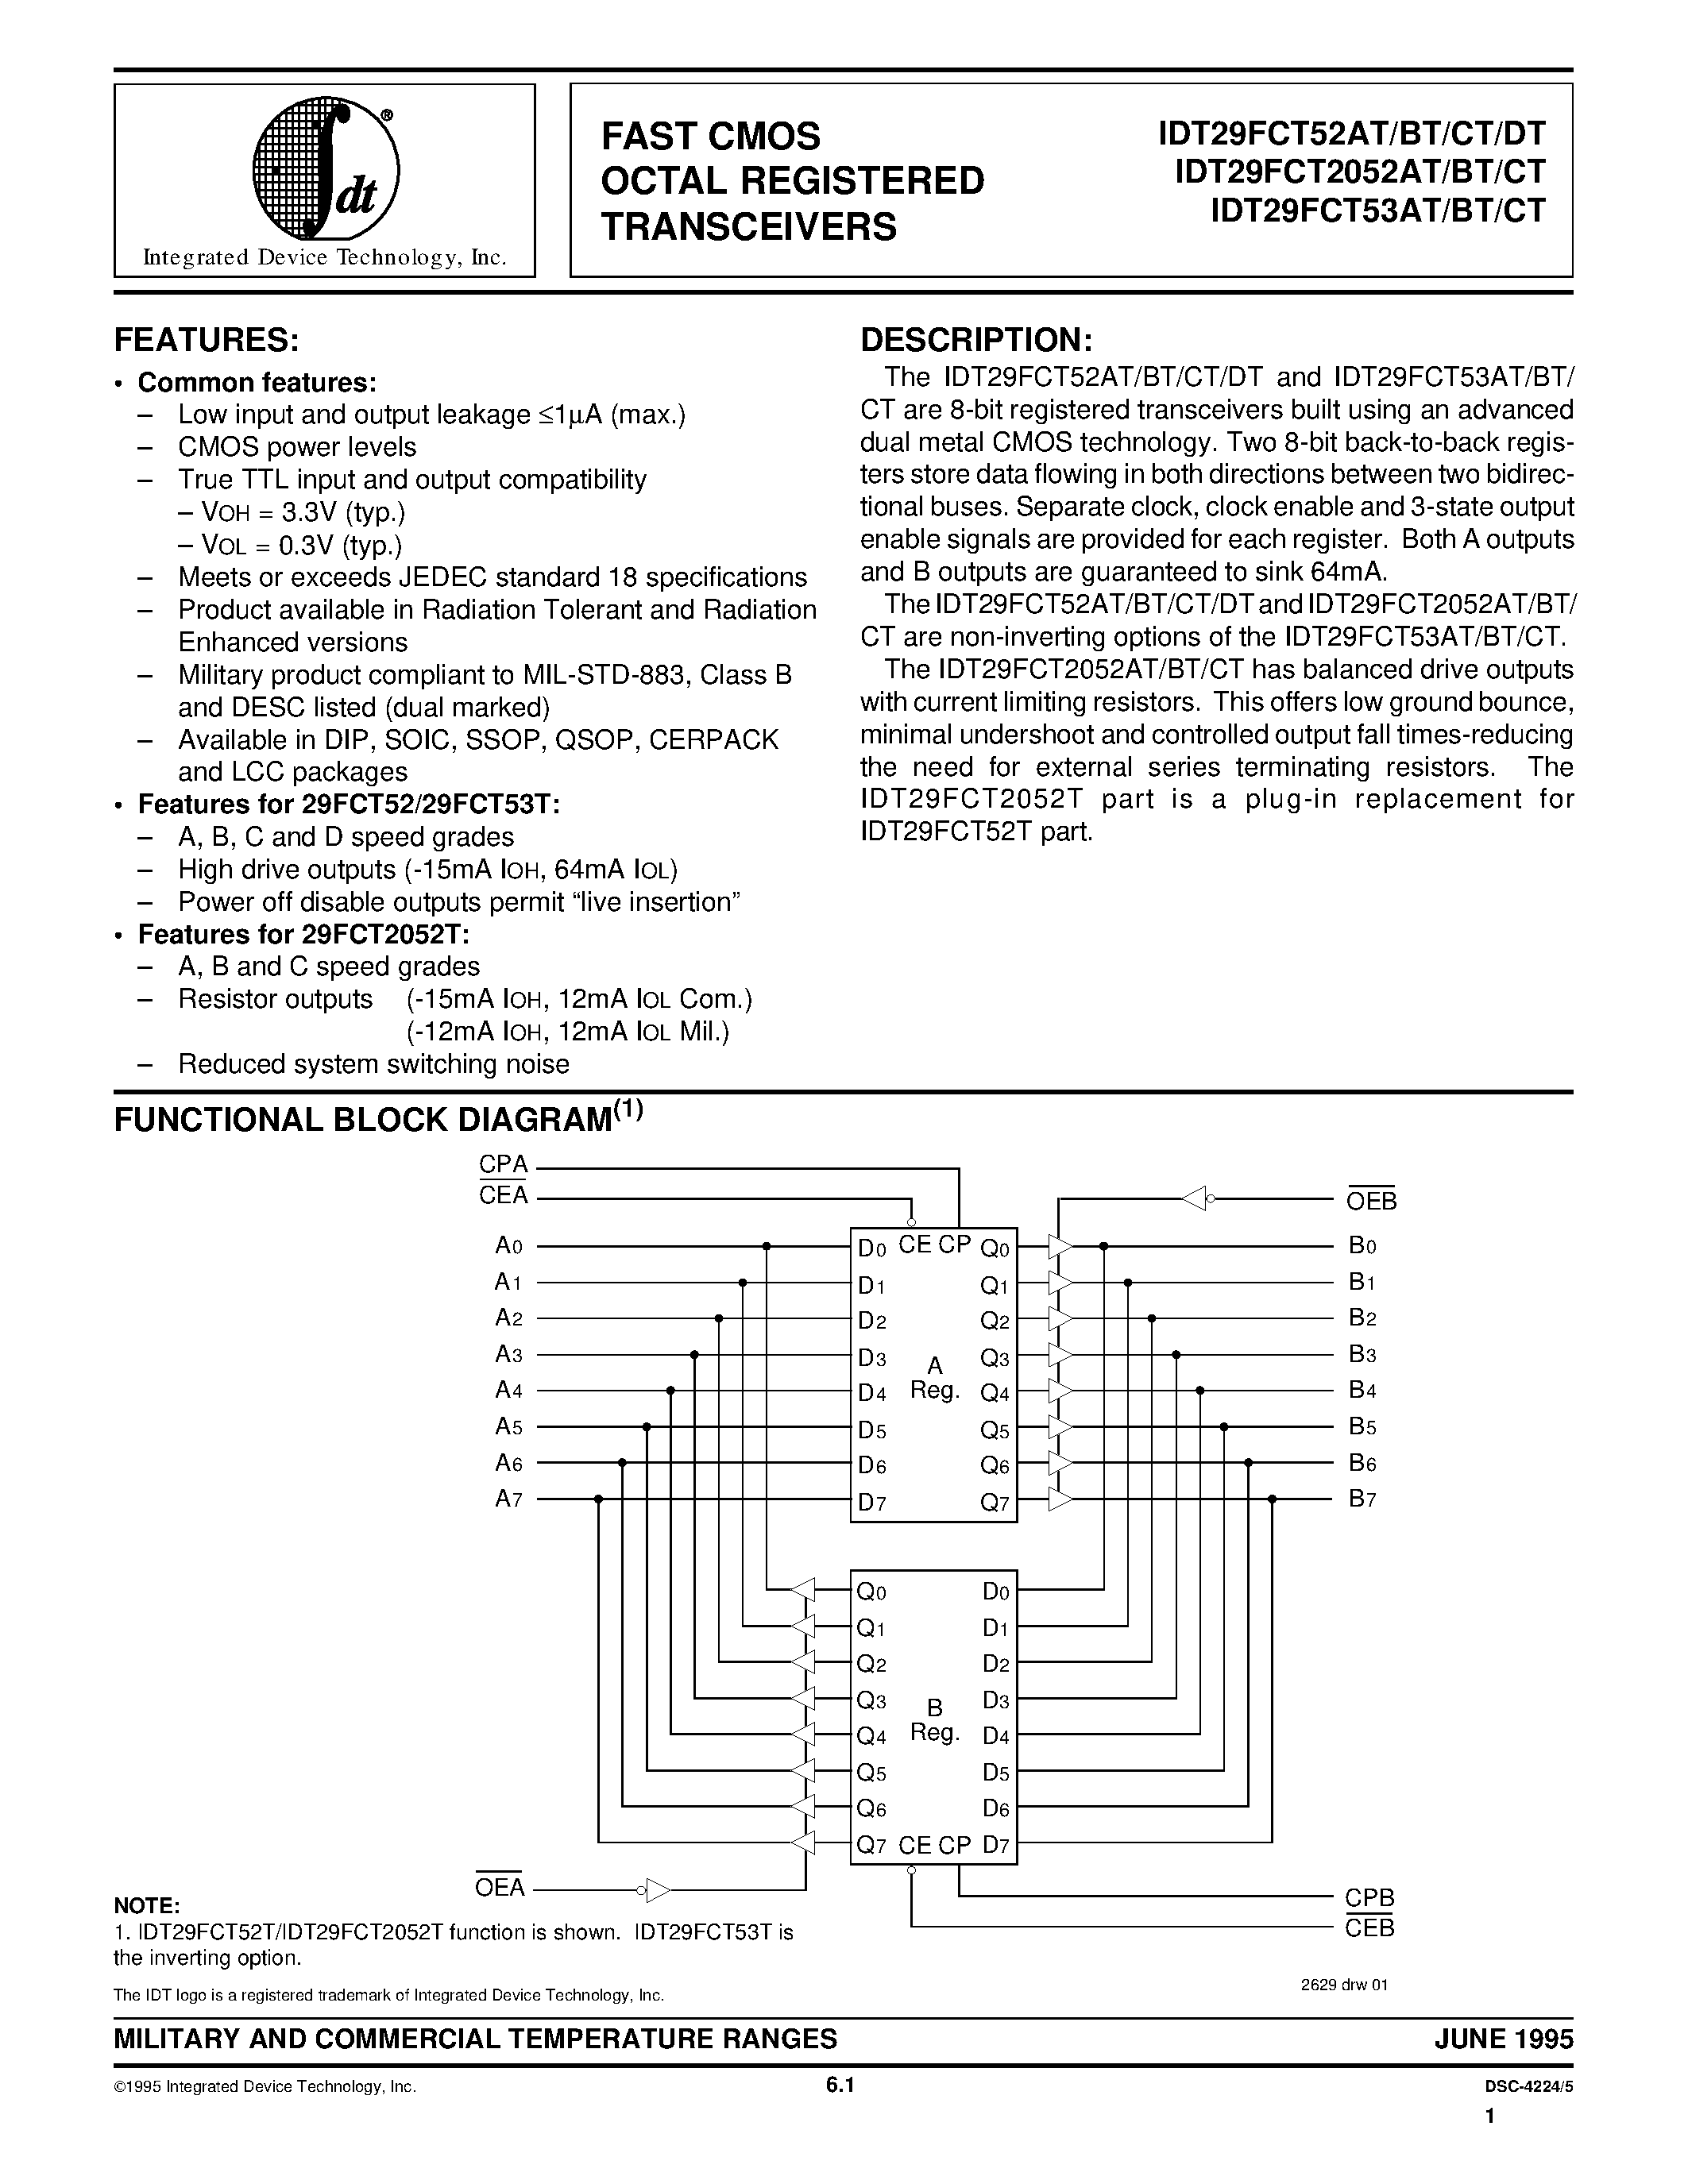 Datasheet 7429FCT53DTP - FAST CMOS OCTAL REGISTERED TRANSCEIVERS page 1